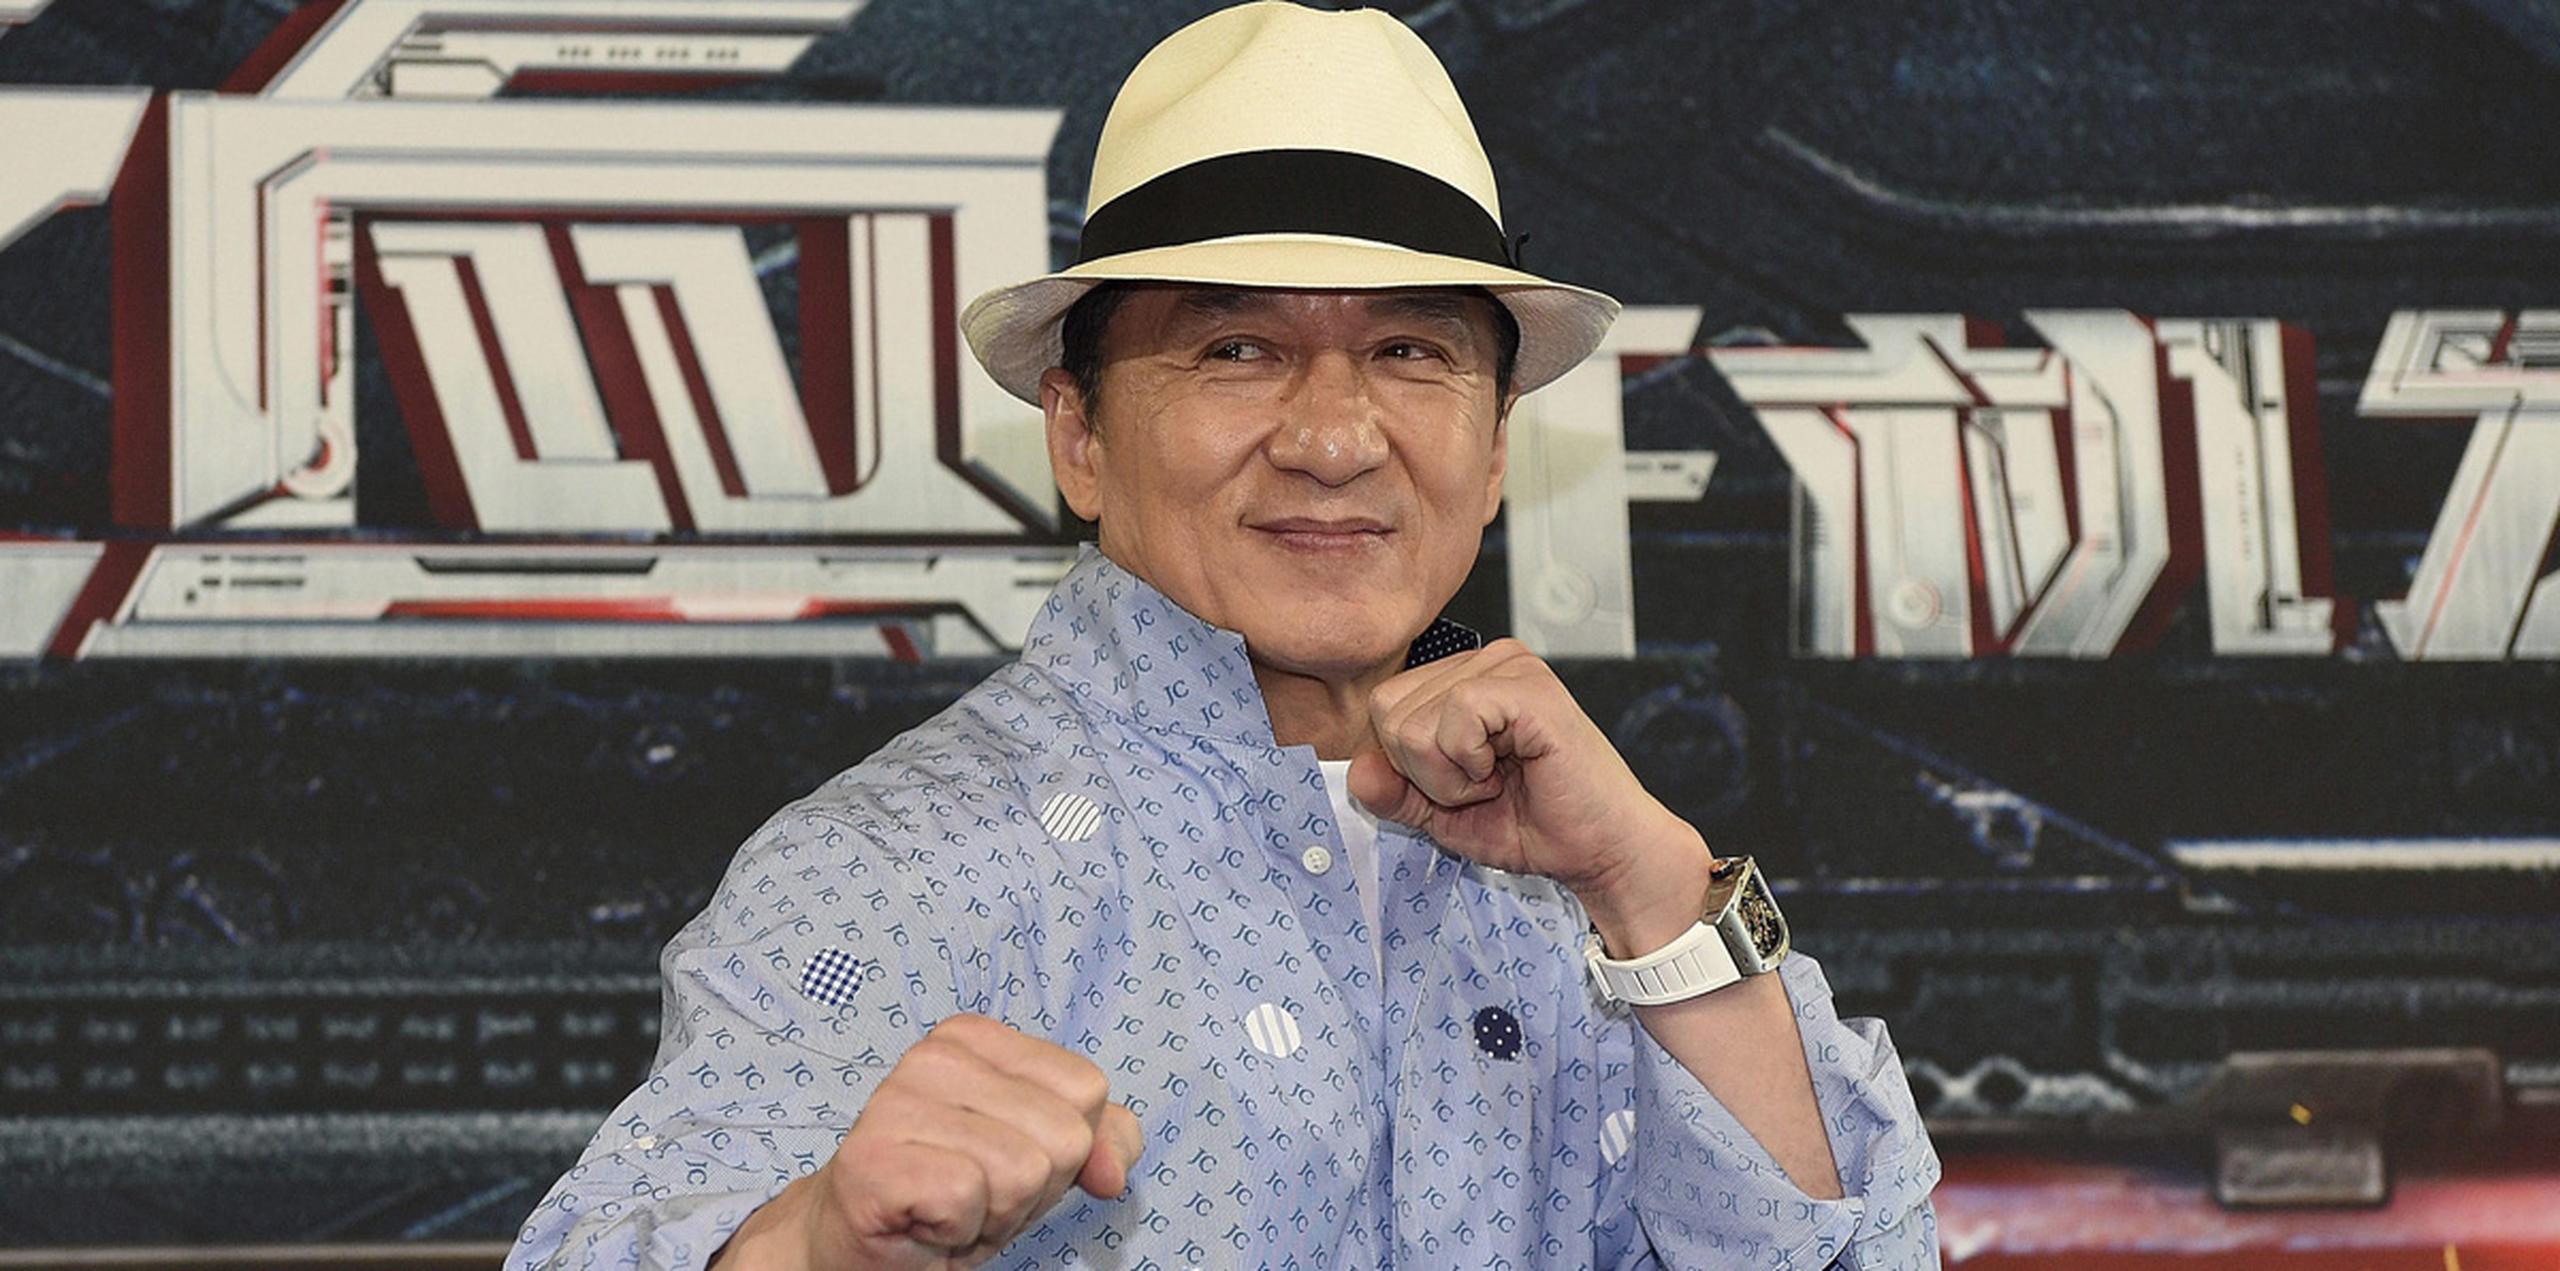 En su comunicado, la Academia destacó que el actor hongkonés Jackie Chan ha desarrollado una "inconfundible" carrera internacional. (EFE)